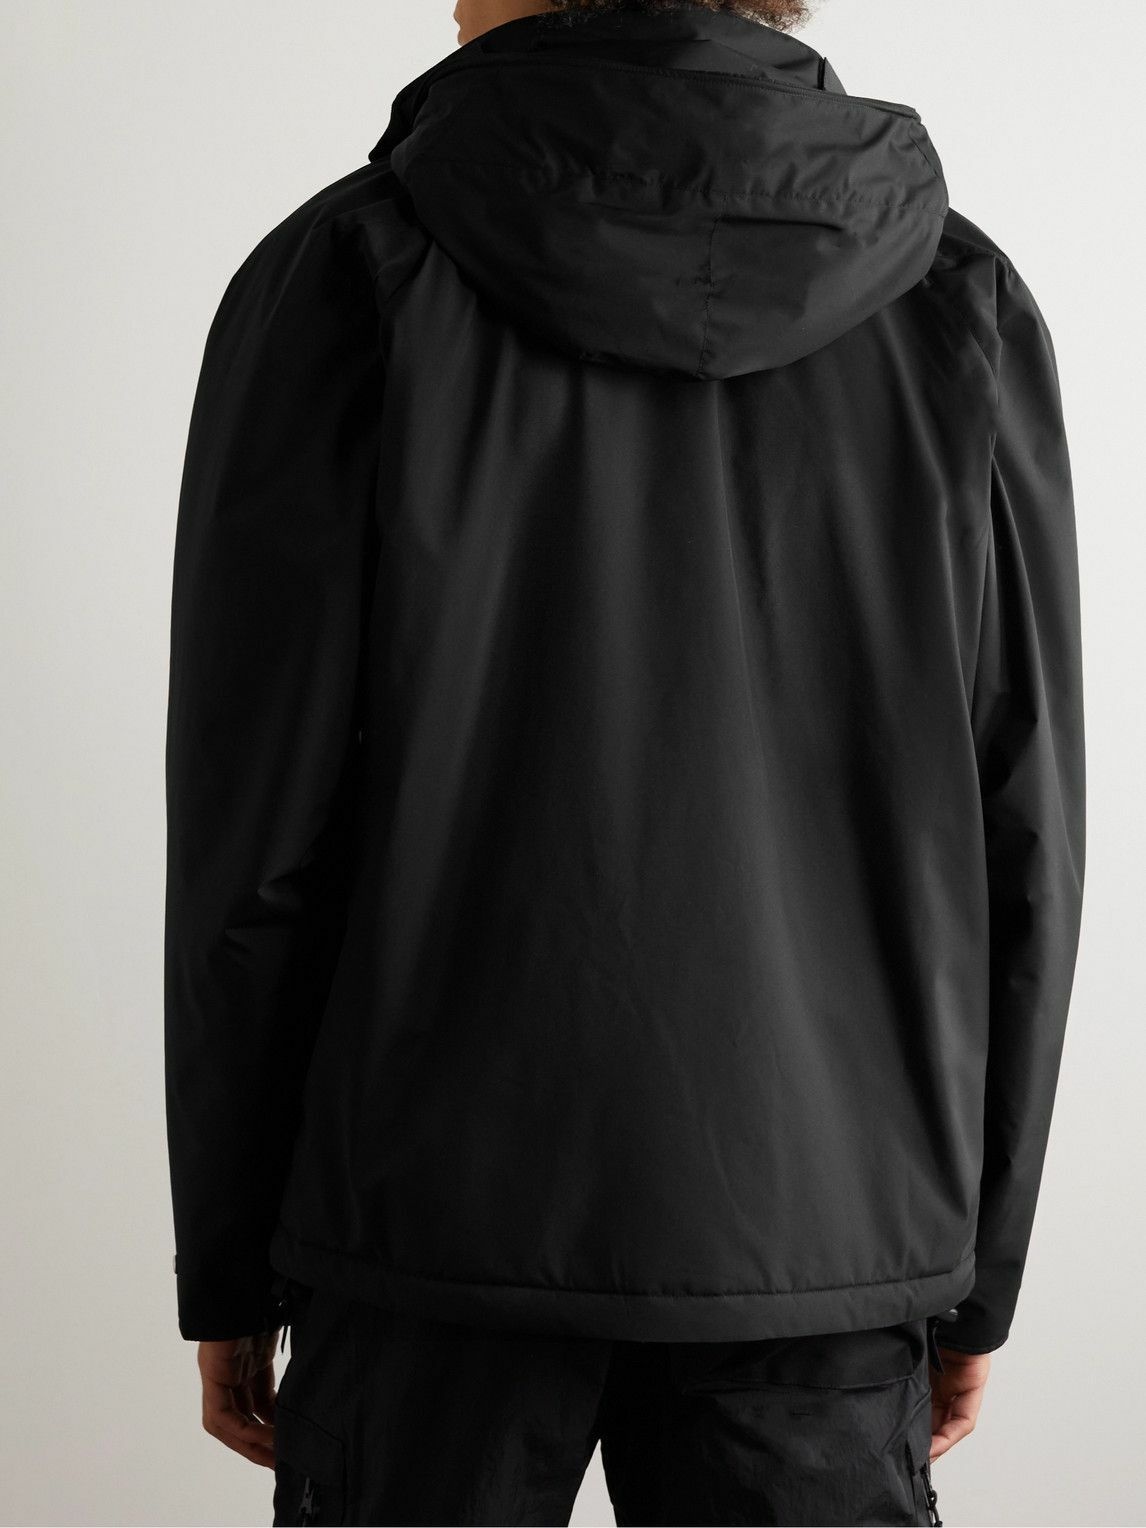 ACRONYM - PrimaLoft® WINDSTOPPER® Hooded Jacket - Black